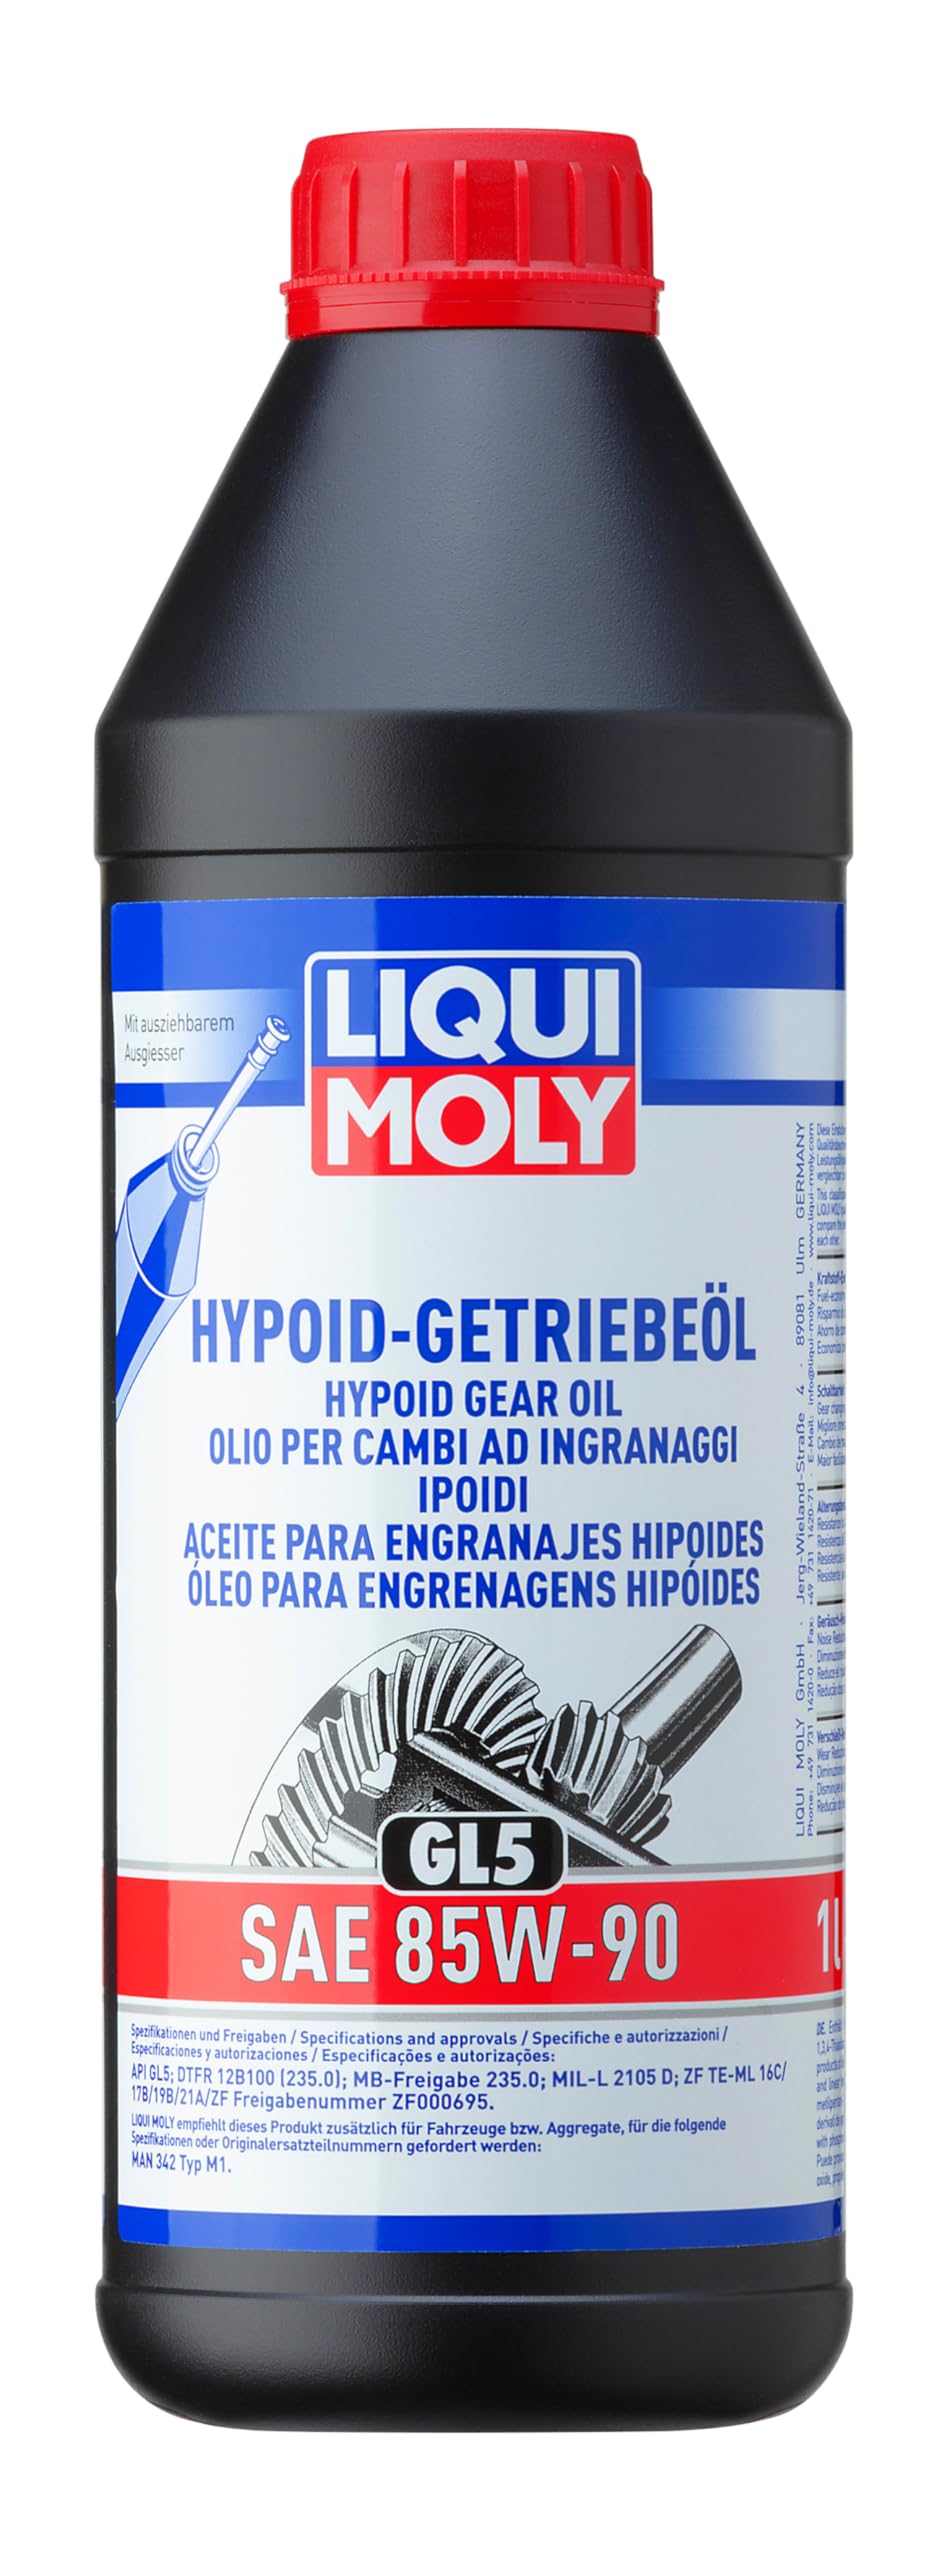 LIQUI MOLY Hypoid-Getriebeöl (GL5) SAE 85W-90 | 1 L | Getriebeöl | Hydrauliköl | Art.-Nr.: 1035 von Liqui Moly